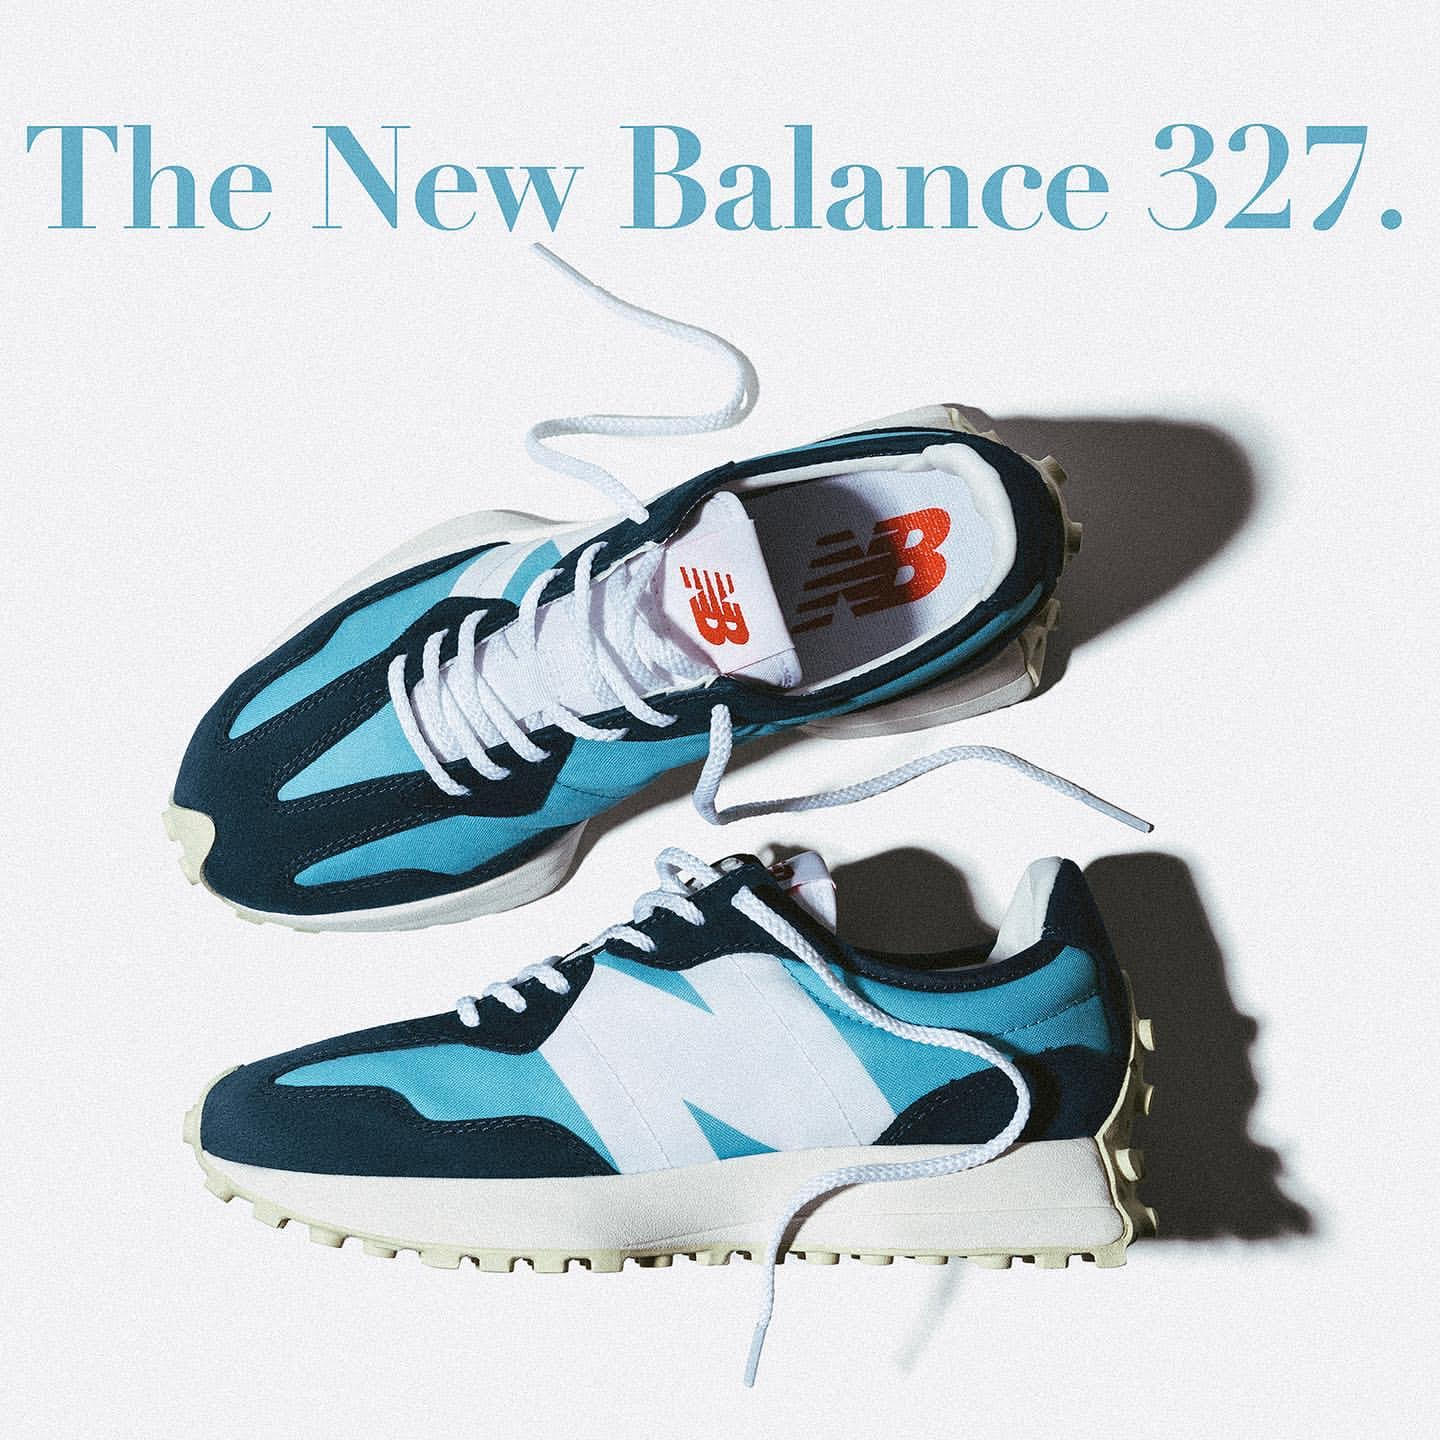 New Balance MS327 (ニューバランス MS327)